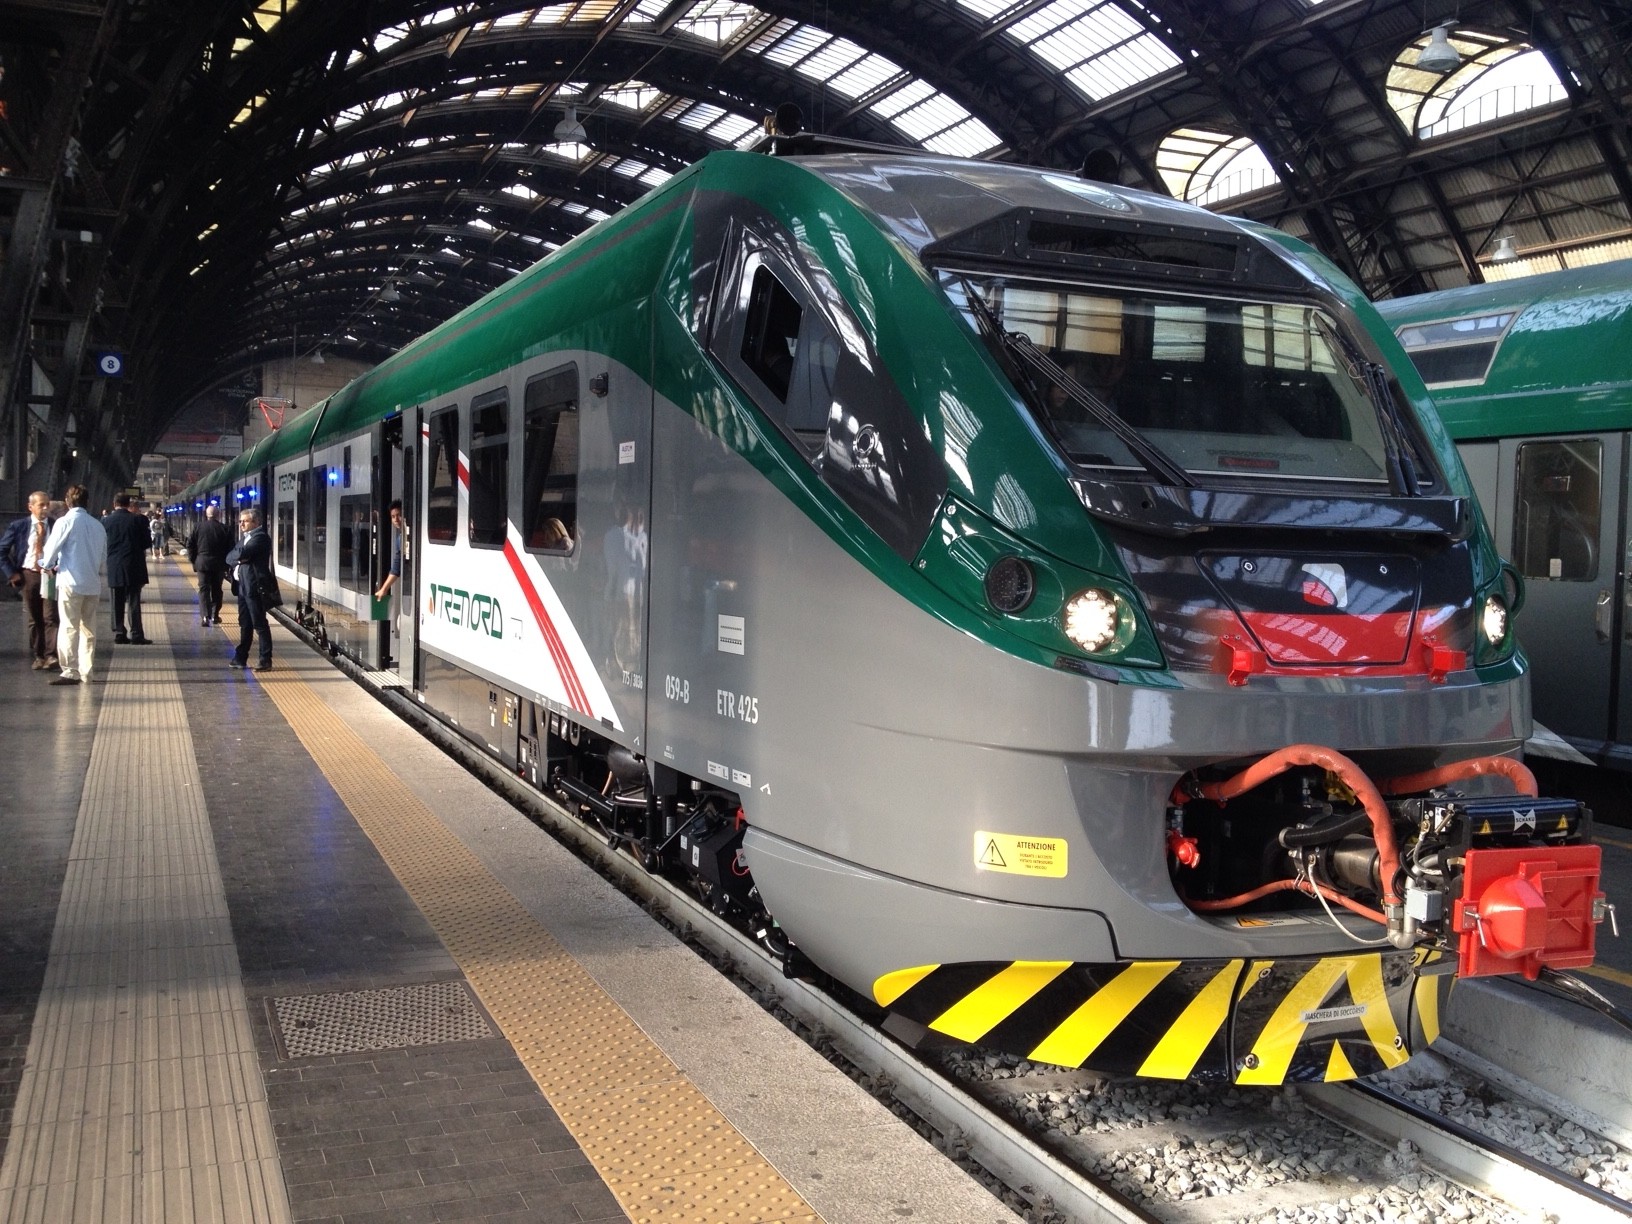 L'ETR425 Coradia Meridian di Trenord in servizio lungo la linea della Valtellina Milano-Sondrio-Tirano - Foto Trenord